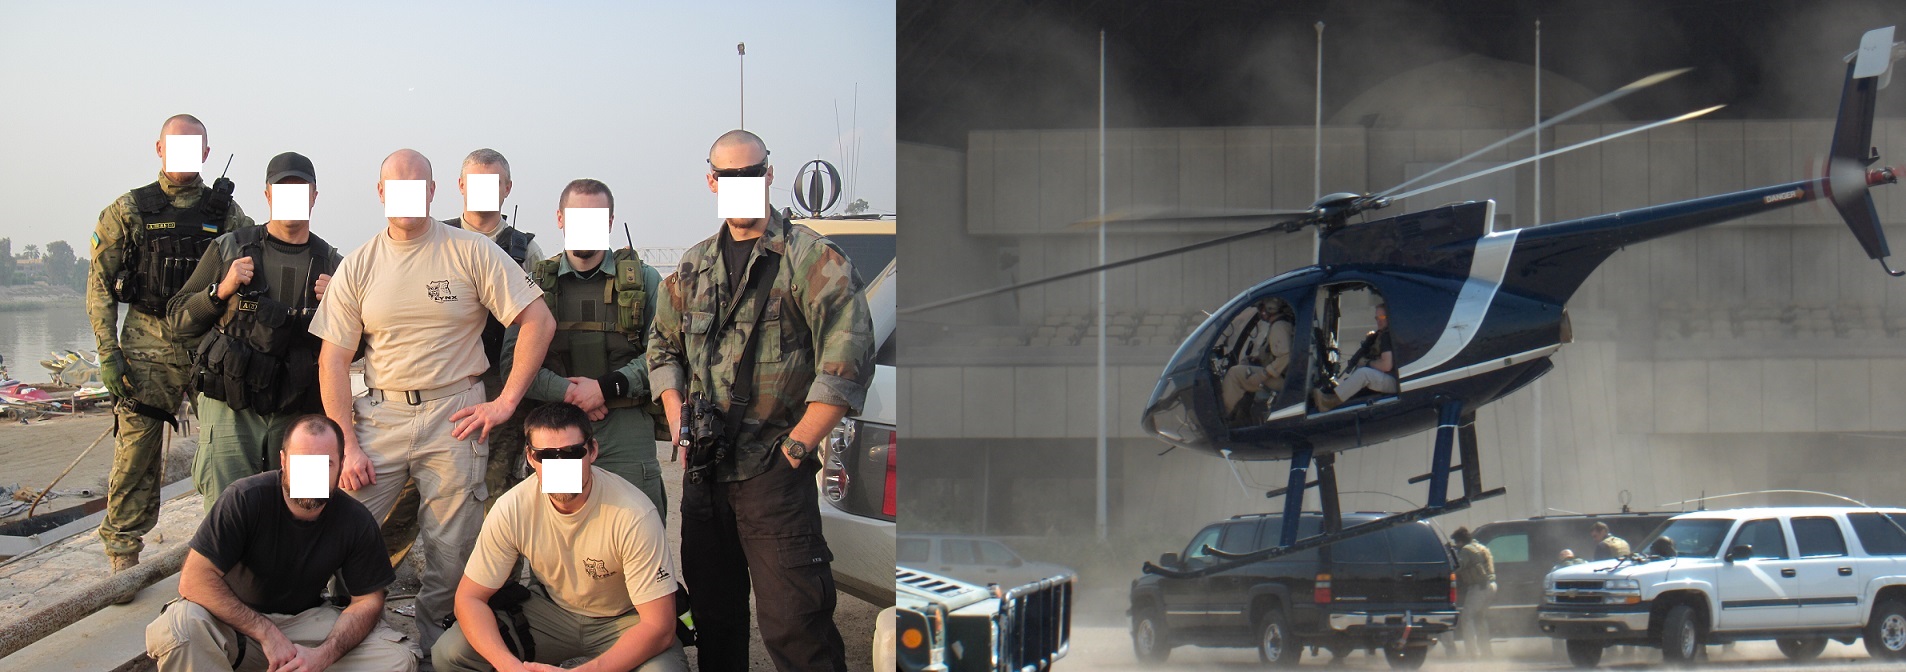 Зліва - бійці коаліційних сил в Іраку, праворуч - найманці приватної військової компанії Backwater на гелікоптері, всі в тактичних штанах 5.11 Tactical та інших